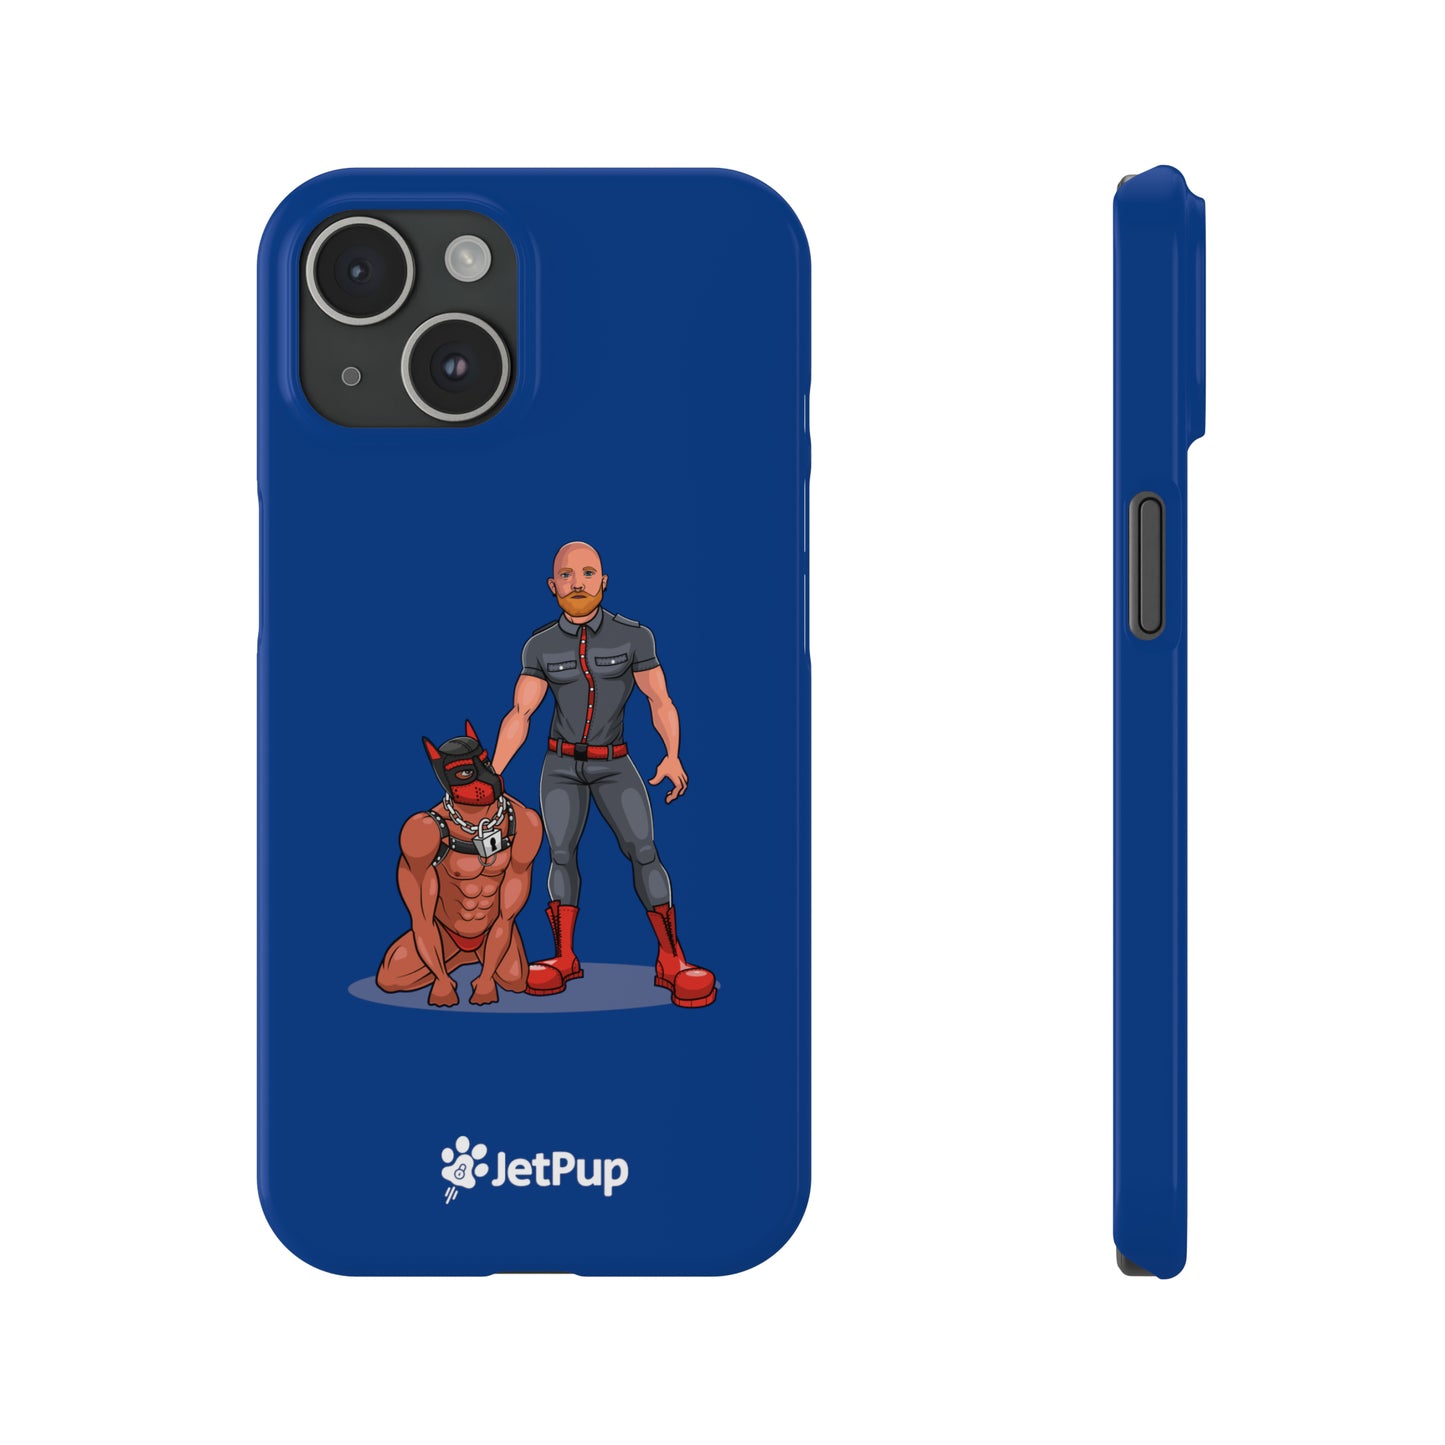 Dad & Pup Slim iPhone Cases - Blue